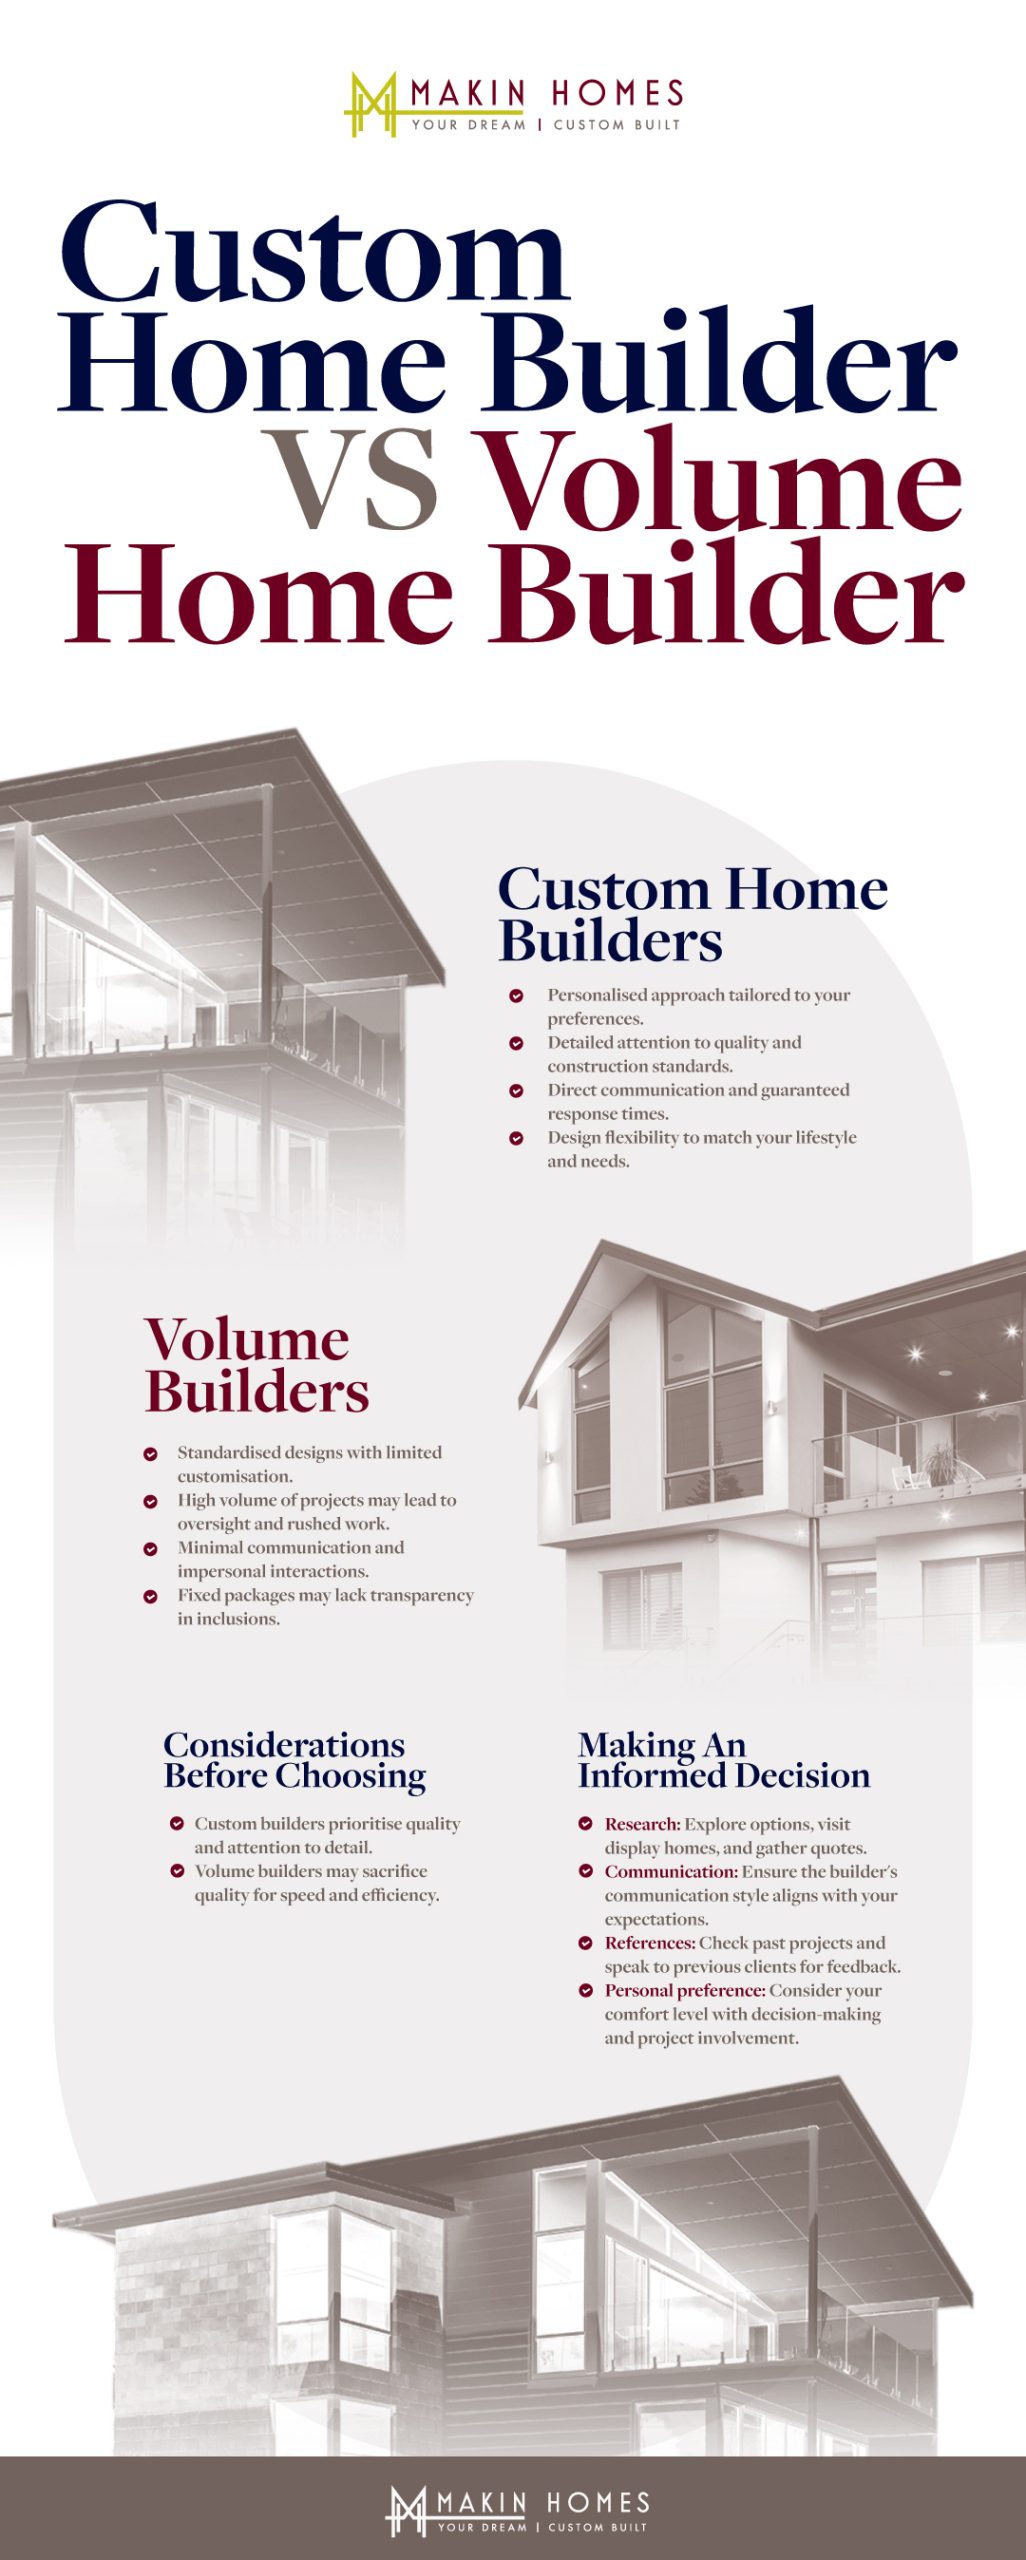 Custom Home Builders Vs Volume Builders